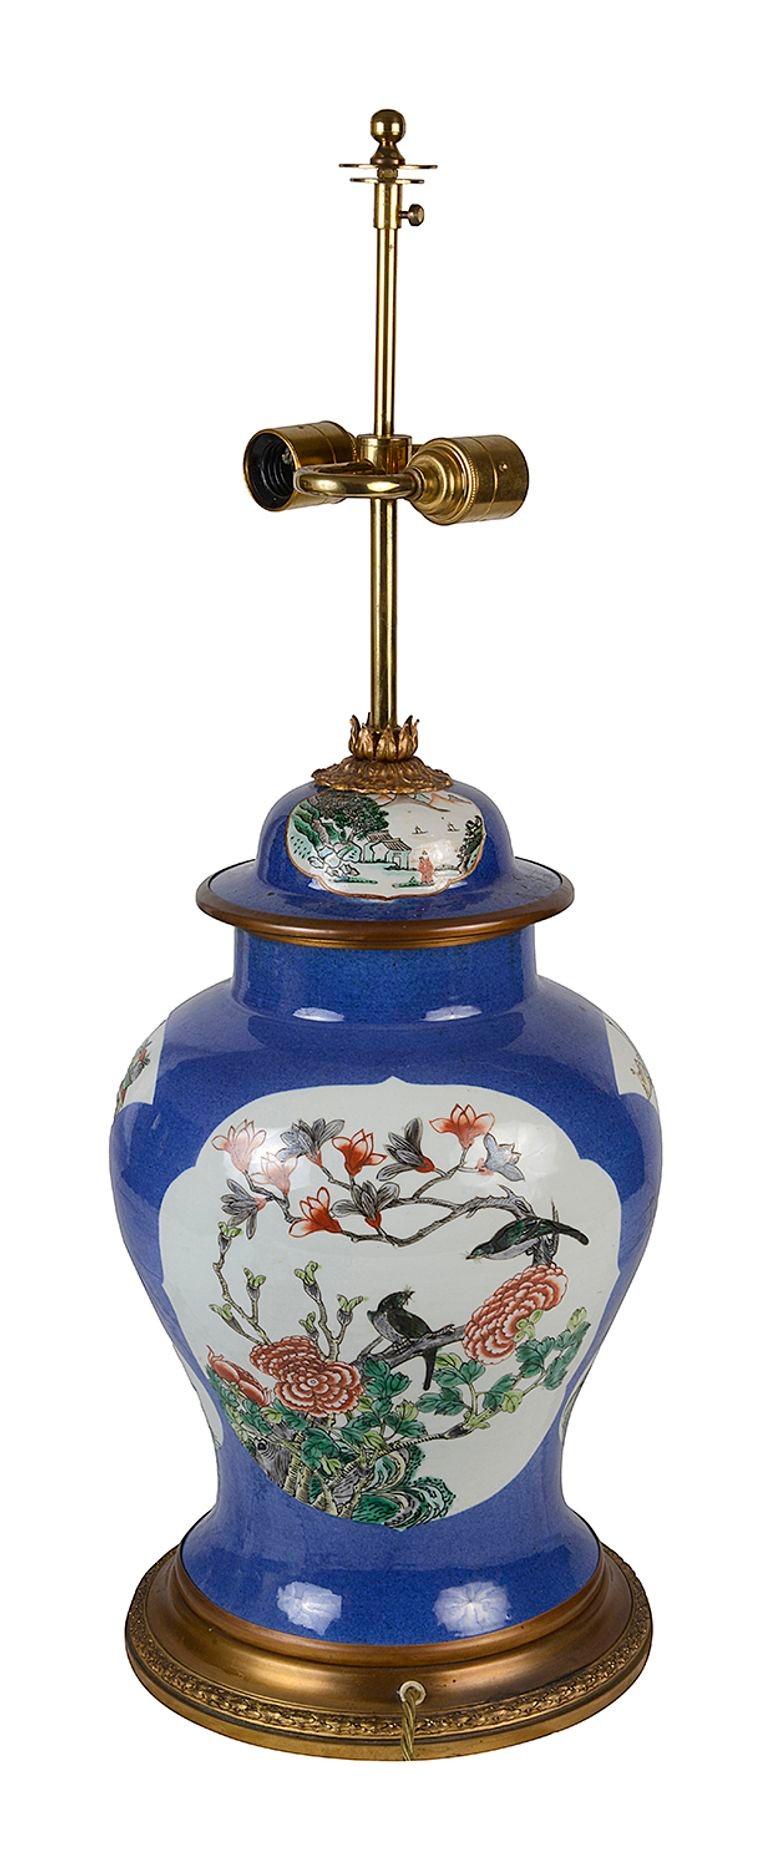 Remarquable vase / lampe en porcelaine Famille Verte d'exportation chinoise du 19e siècle, avec un fond bleu et des panneaux peints à la main représentant des oiseaux et des fleurs exotiques, monté sur une base en bronze doré.


Lot 76 N/H